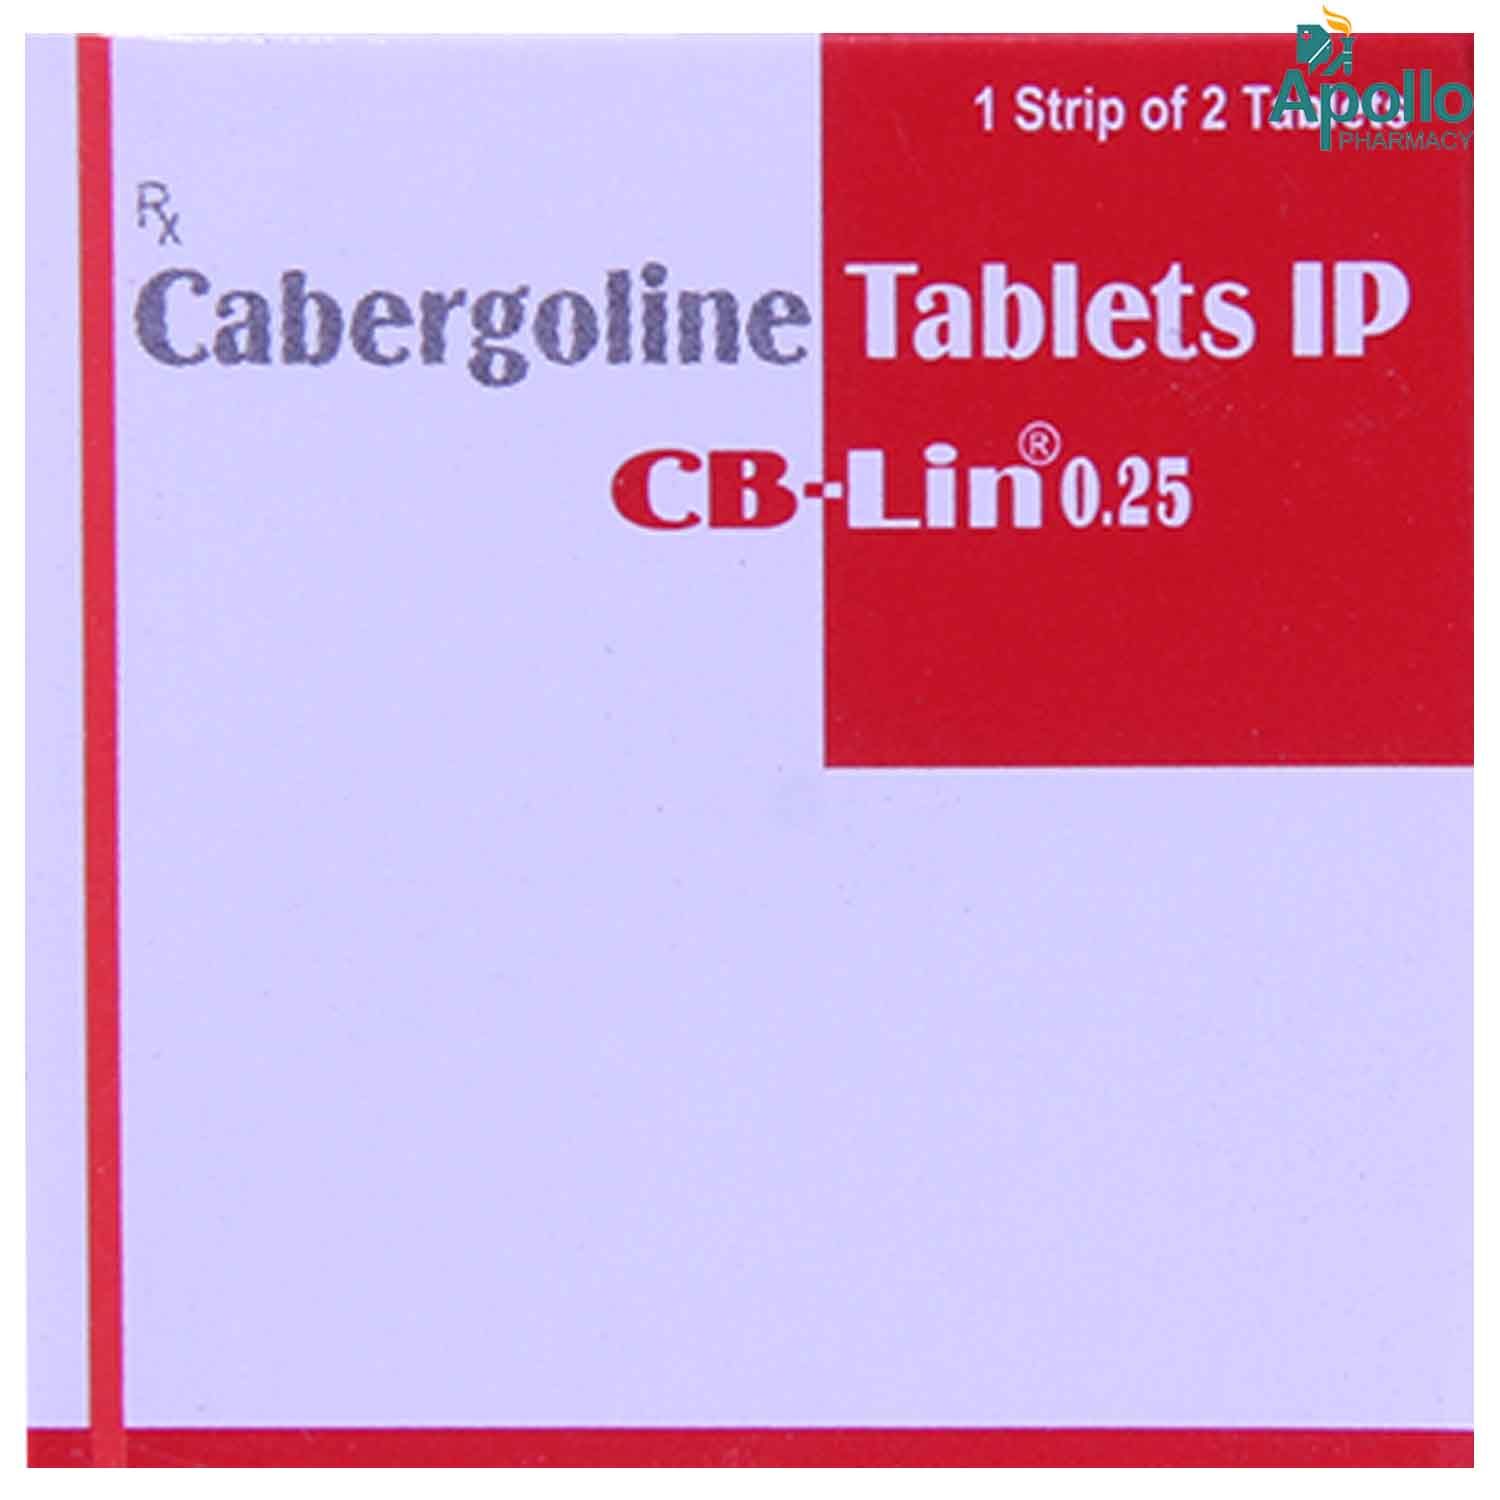 Buy CB-Lin 0.25 Tablet 2's Online